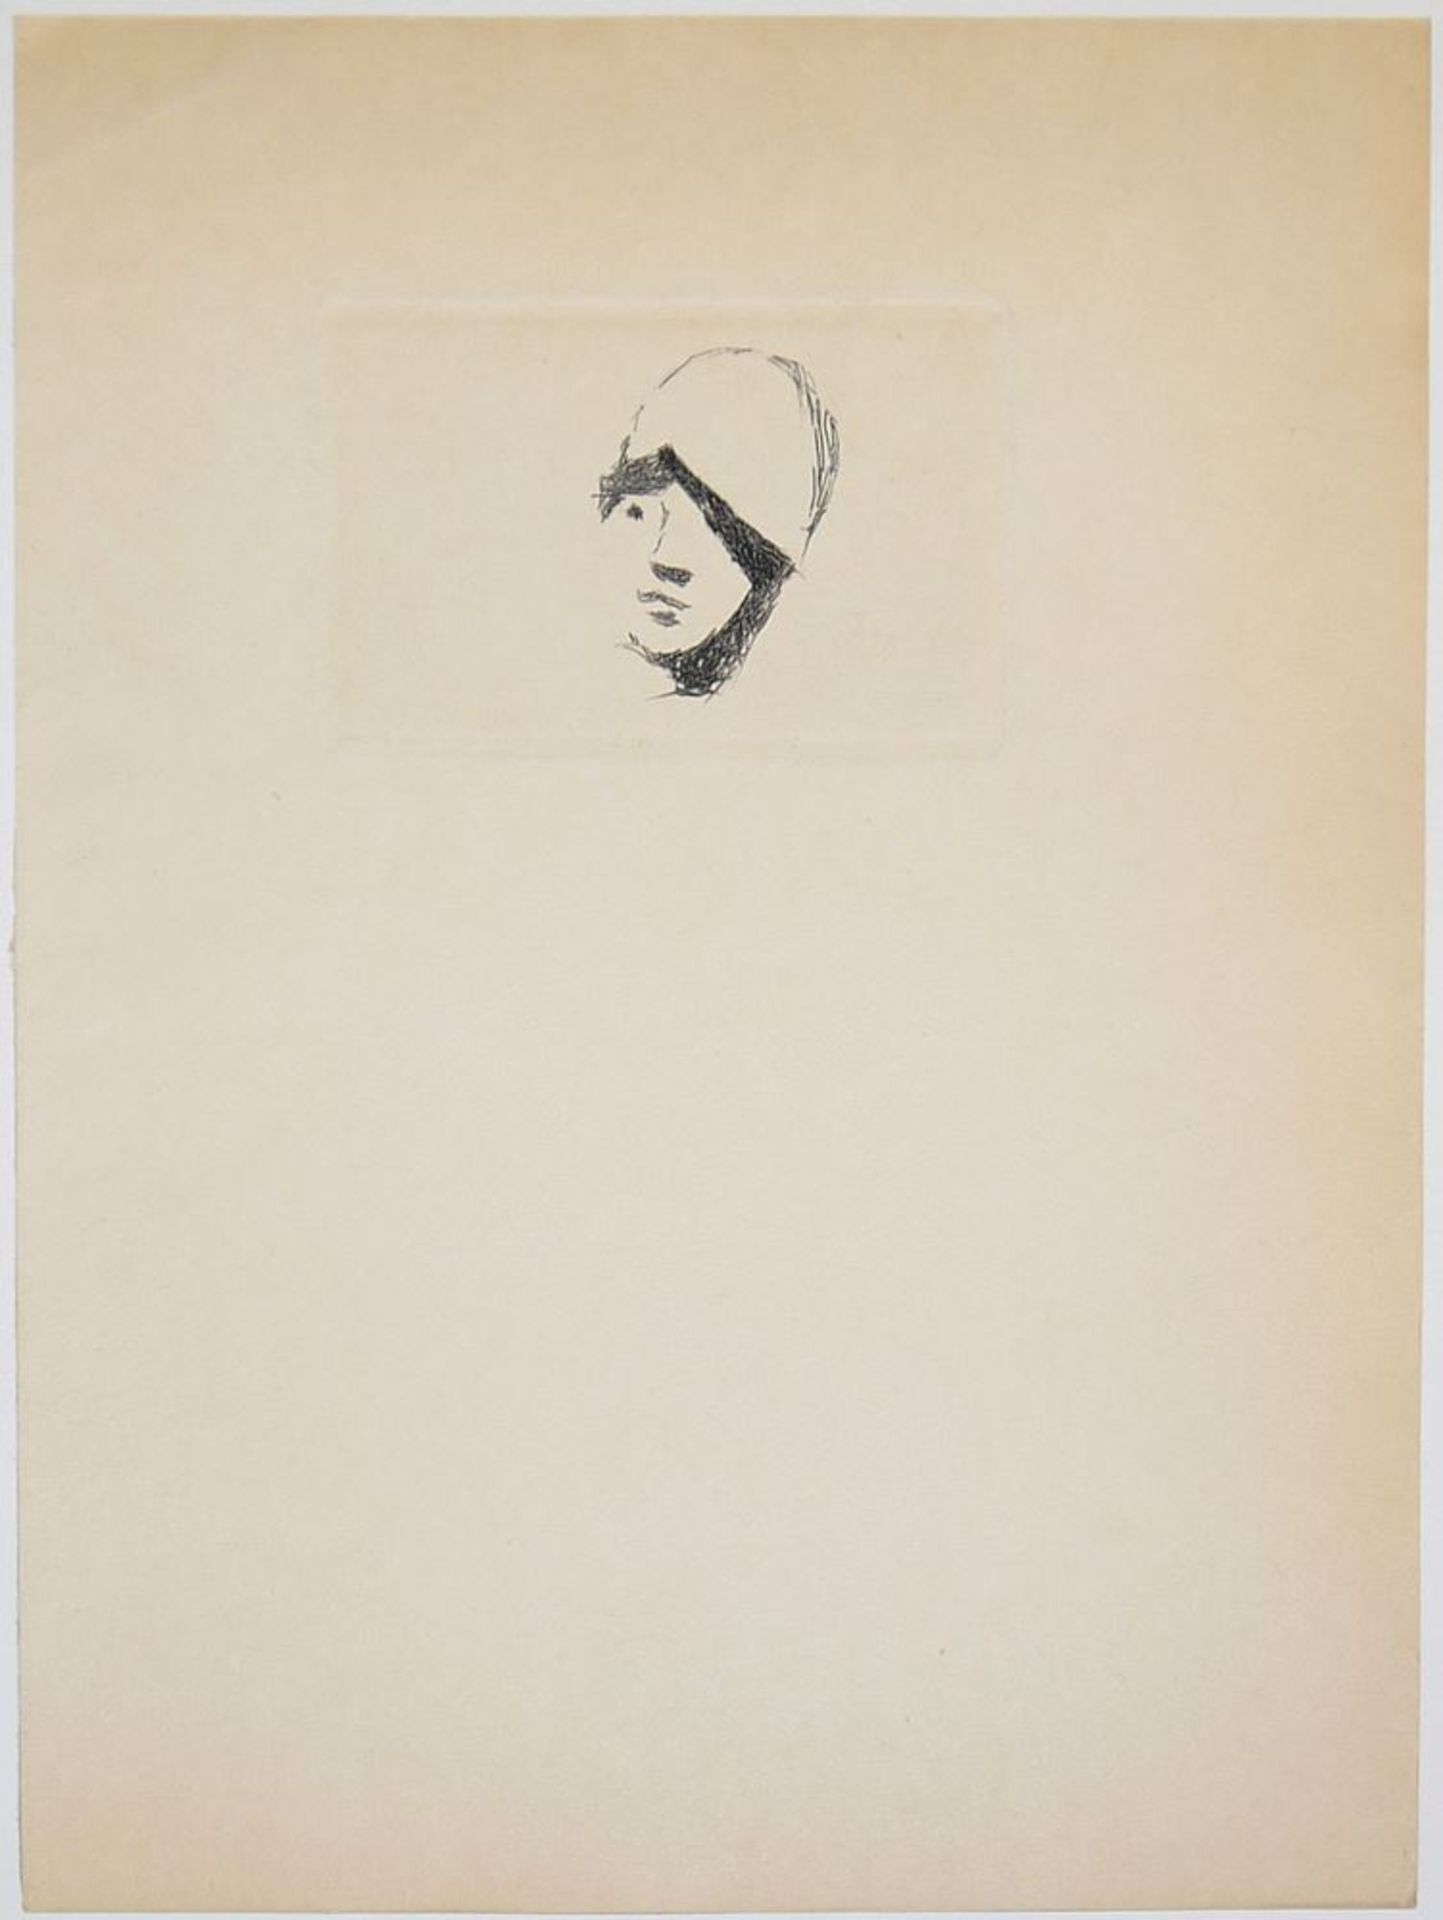 Pierre Bonnard, "Kleiner Kopf" - "Junge Frau am Meer" - Komposition, 3 Radierungen um 1930 - Image 3 of 4